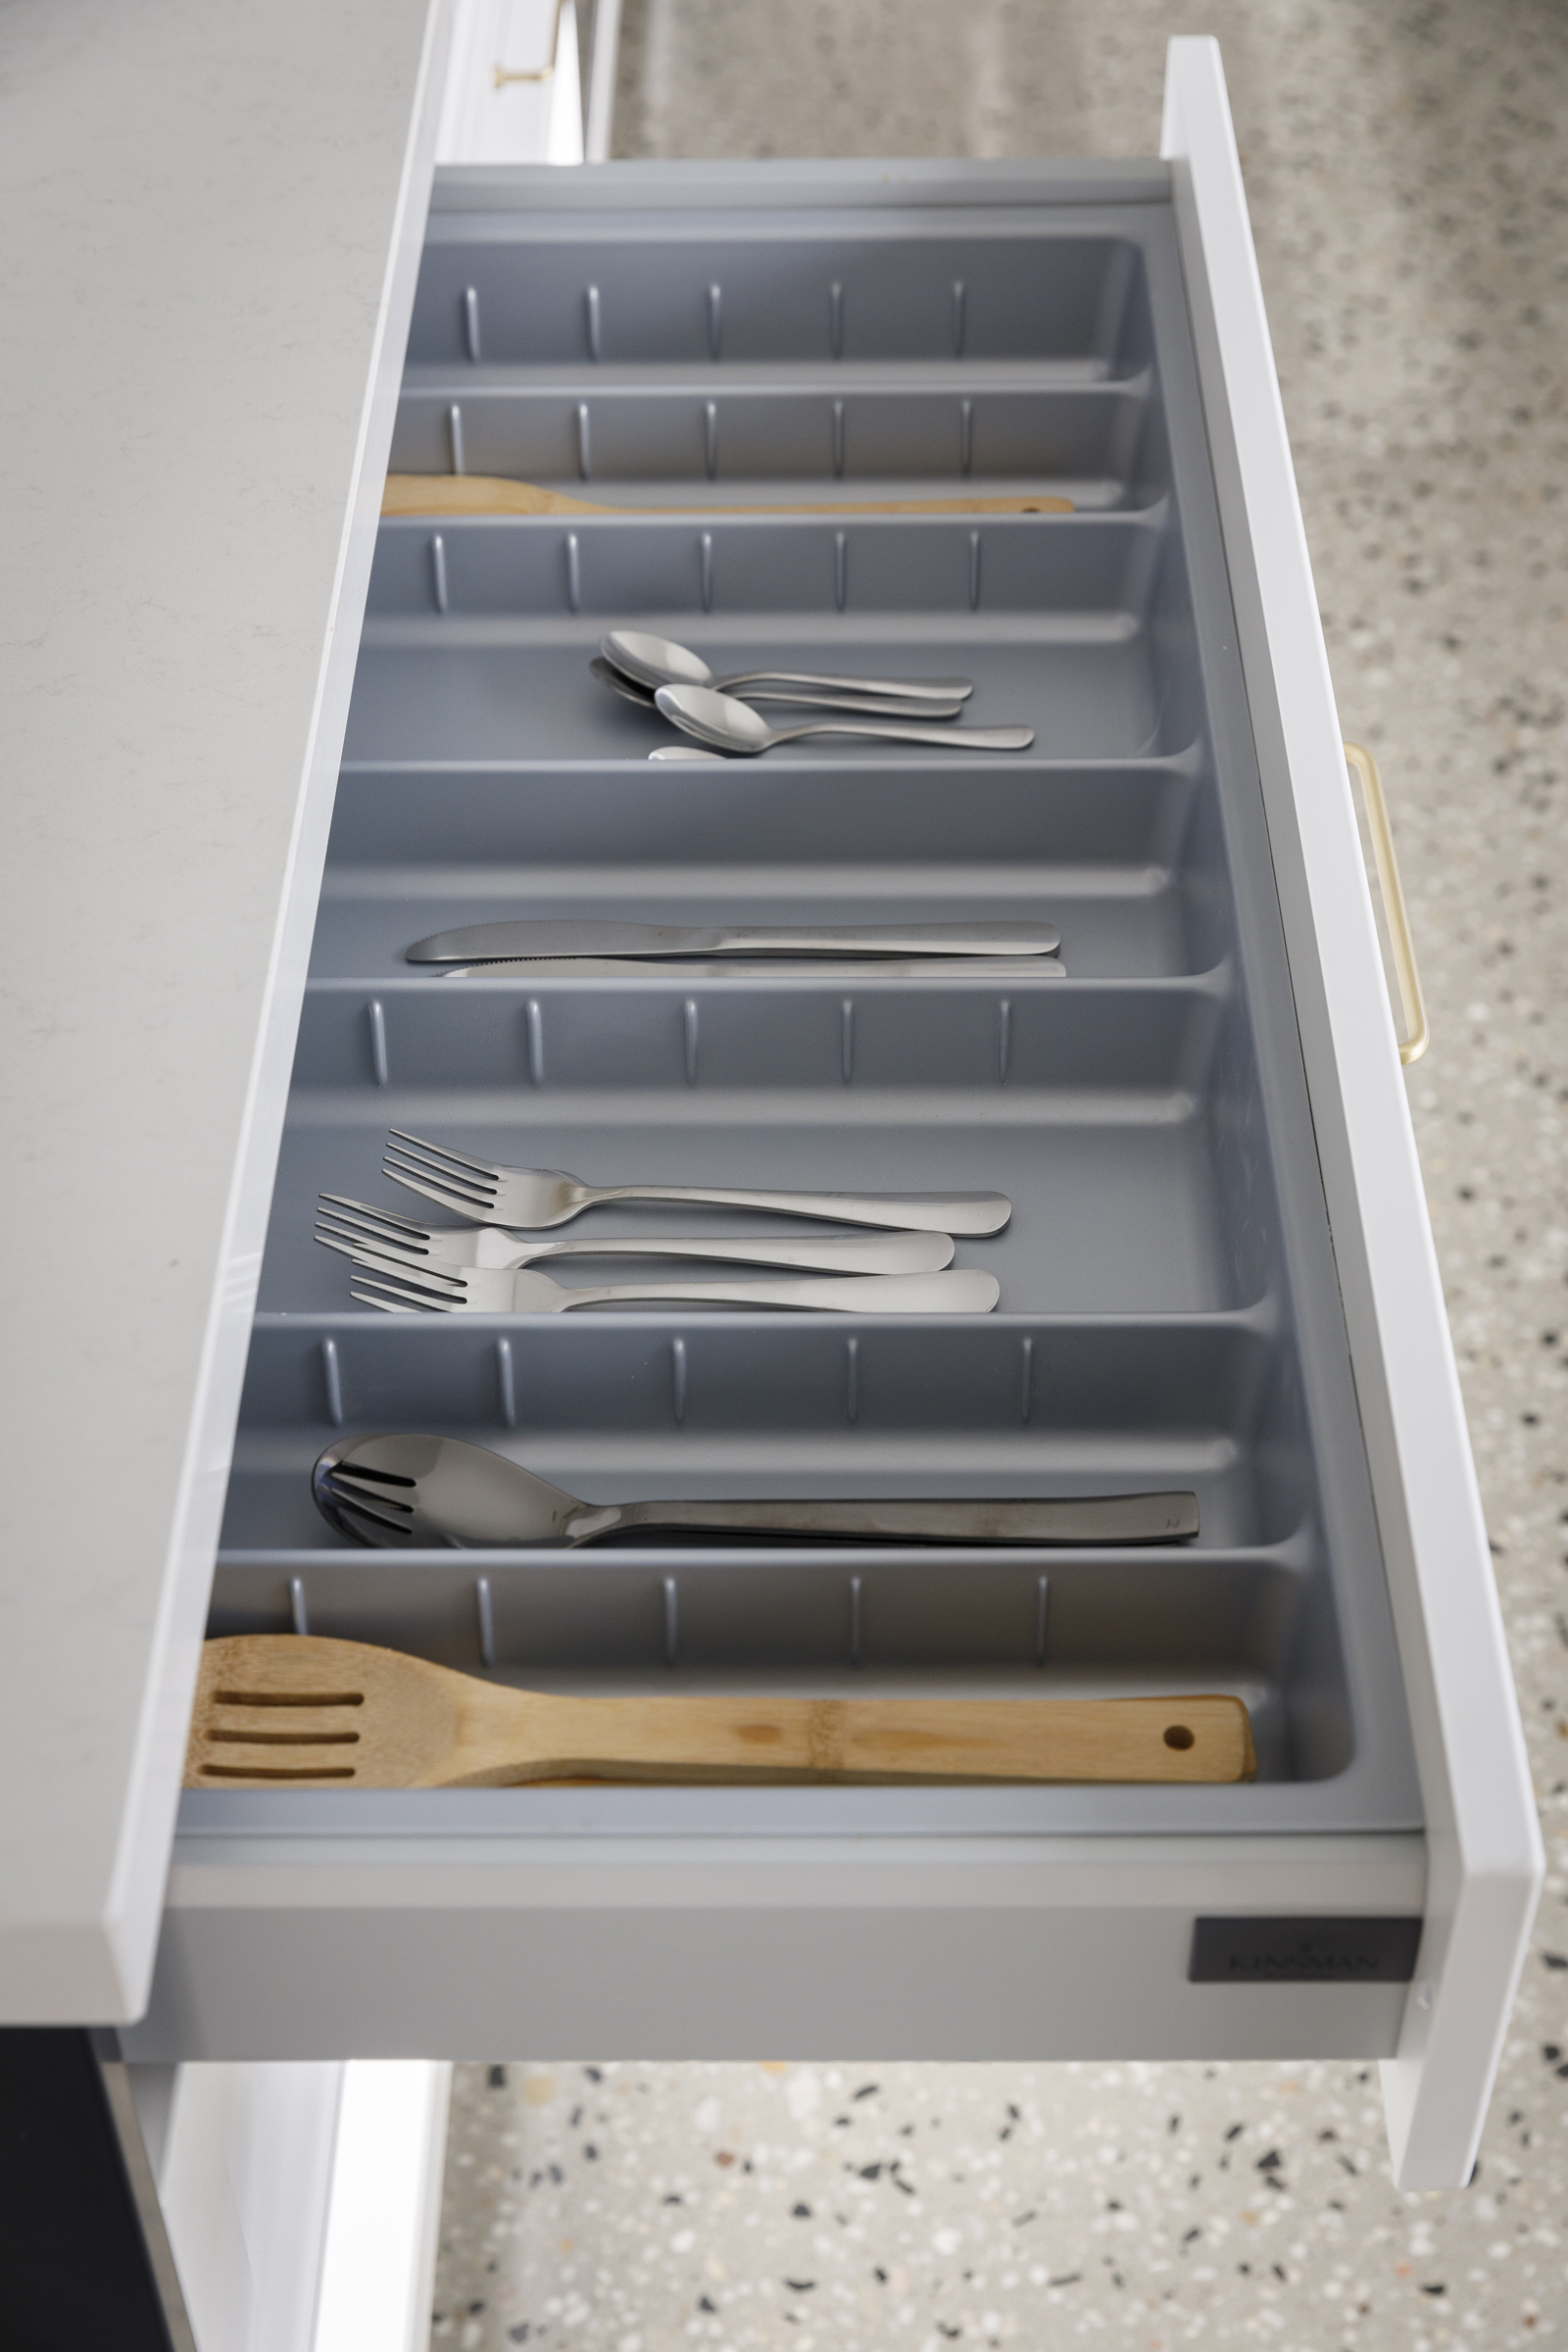 ORGA cutlery trays